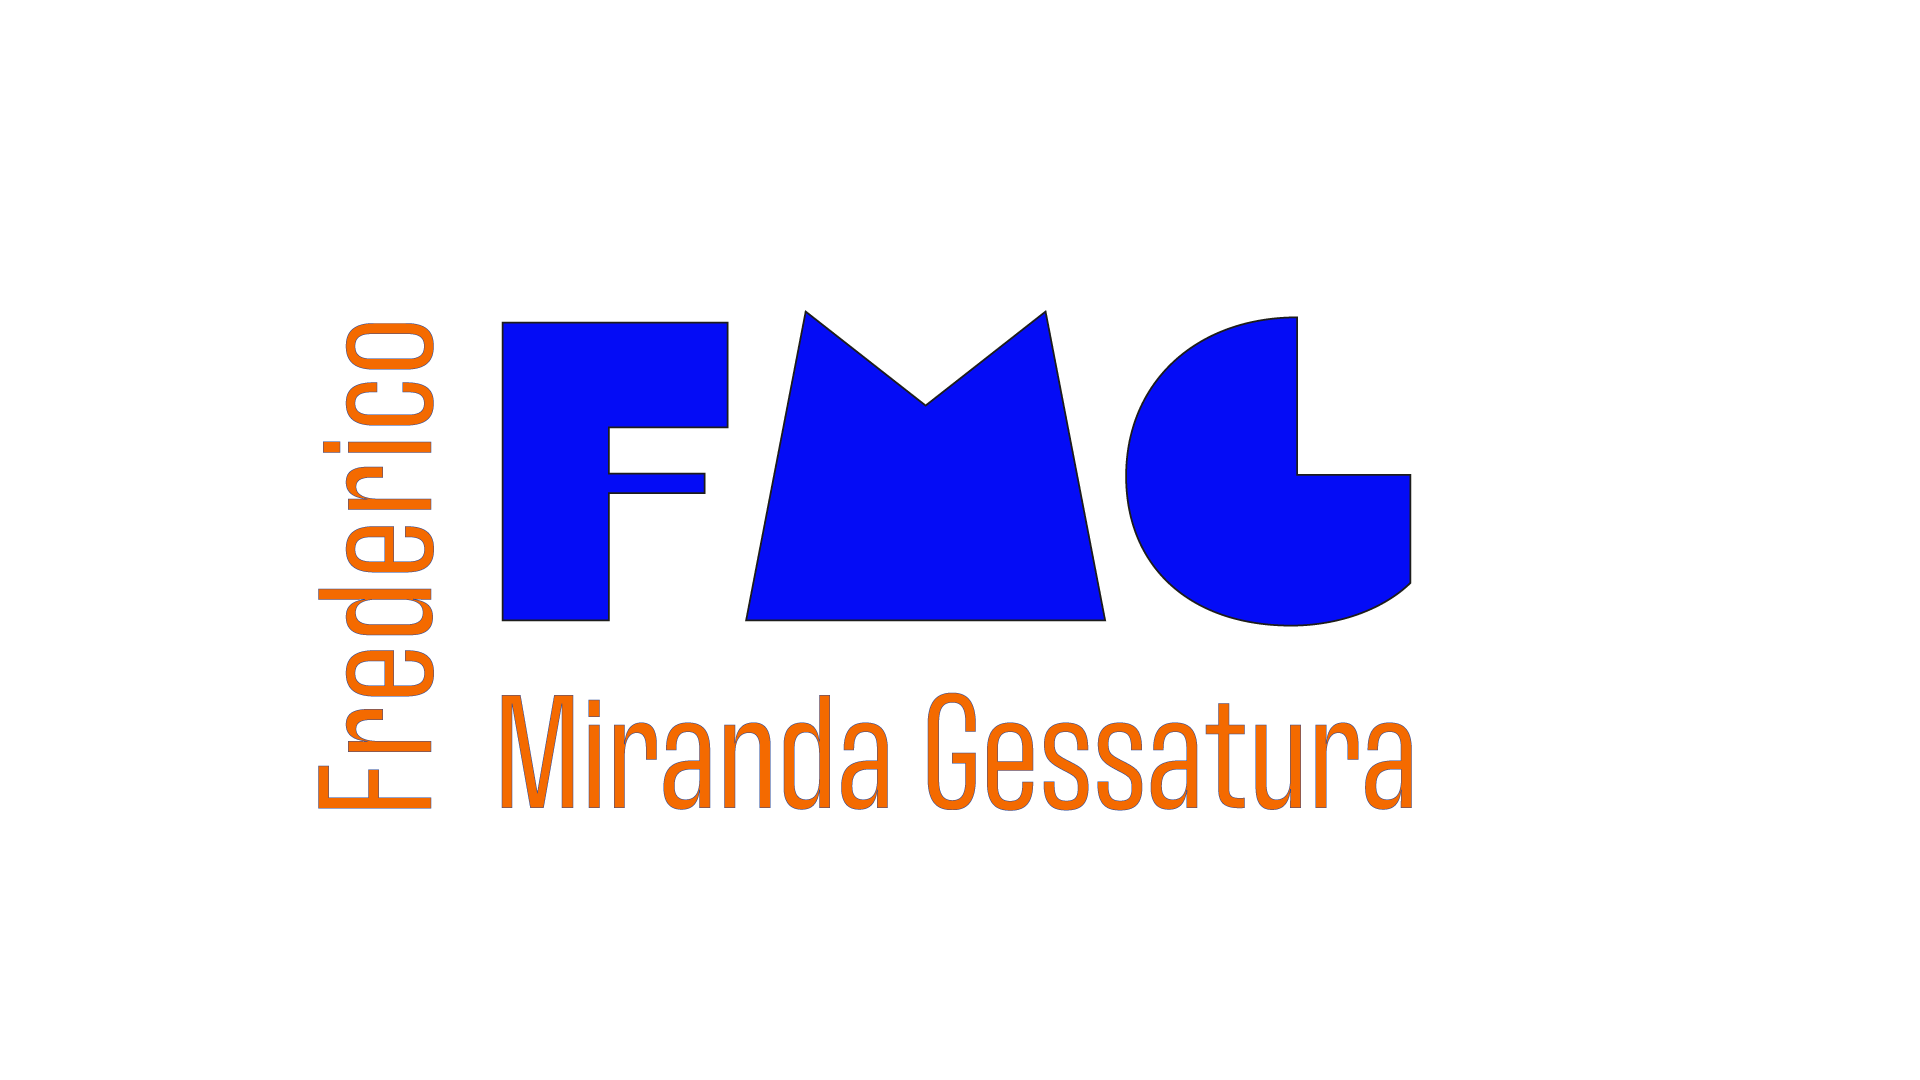 FMG Frederico Miranda impresa gessatura, gesso cartongesso e lavori edili in Ticino e Grigioni Logo. Ristrutturazioni, intonaci, isolazioni termiche.